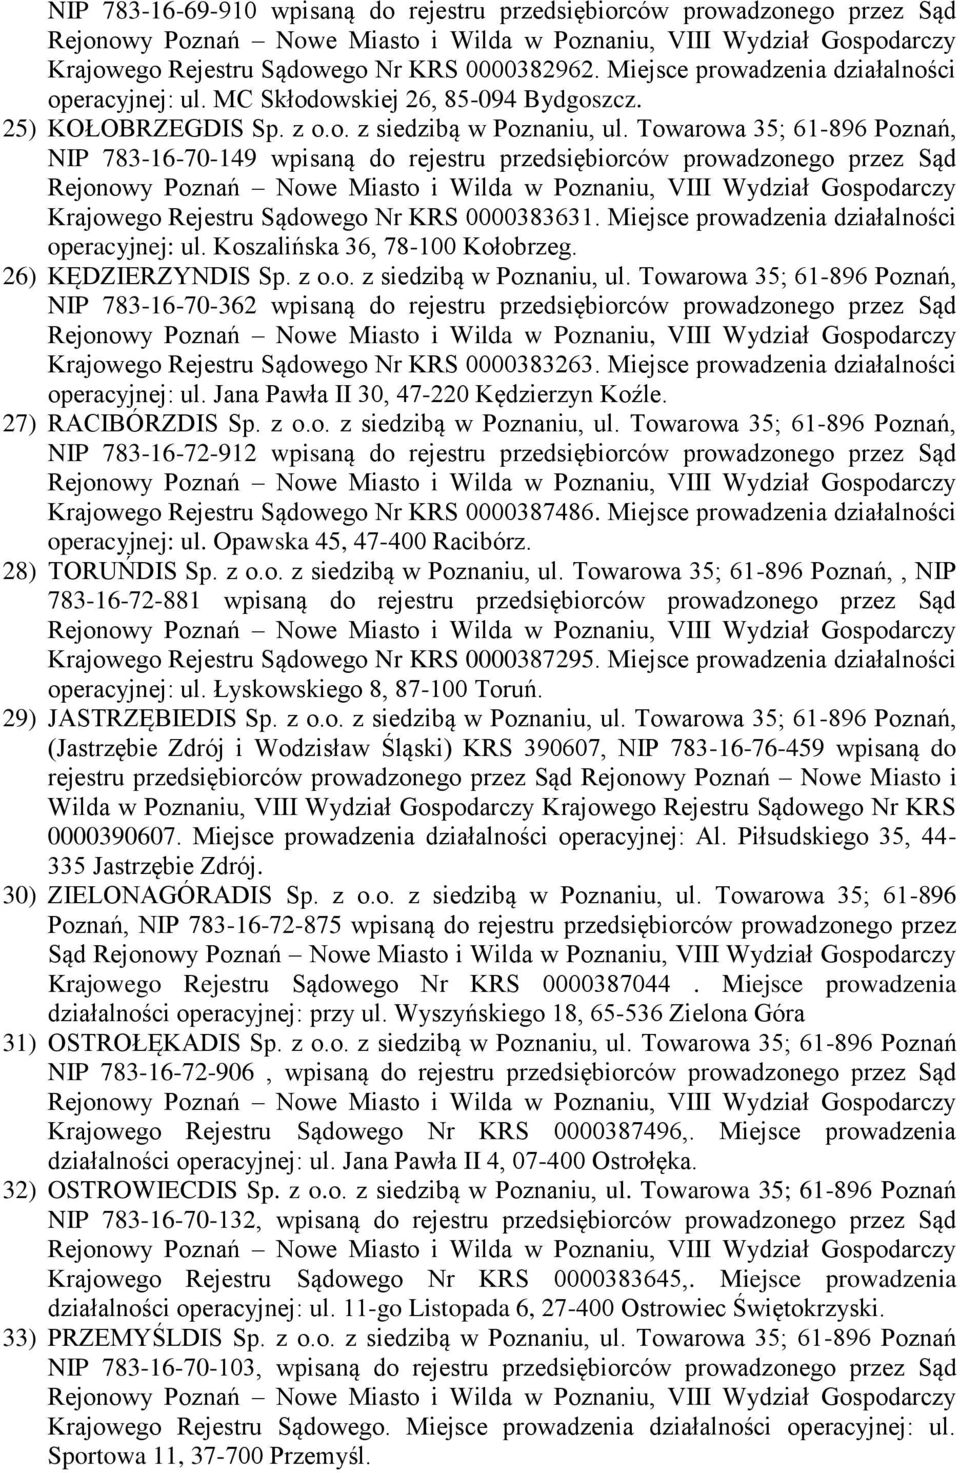 Towarowa 35; 61-896 Poznań, NIP 783-16-70-149 wpisaną do rejestru przedsiębiorców prowadzonego przez Sąd Krajowego Rejestru Sądowego Nr KRS 0000383631.